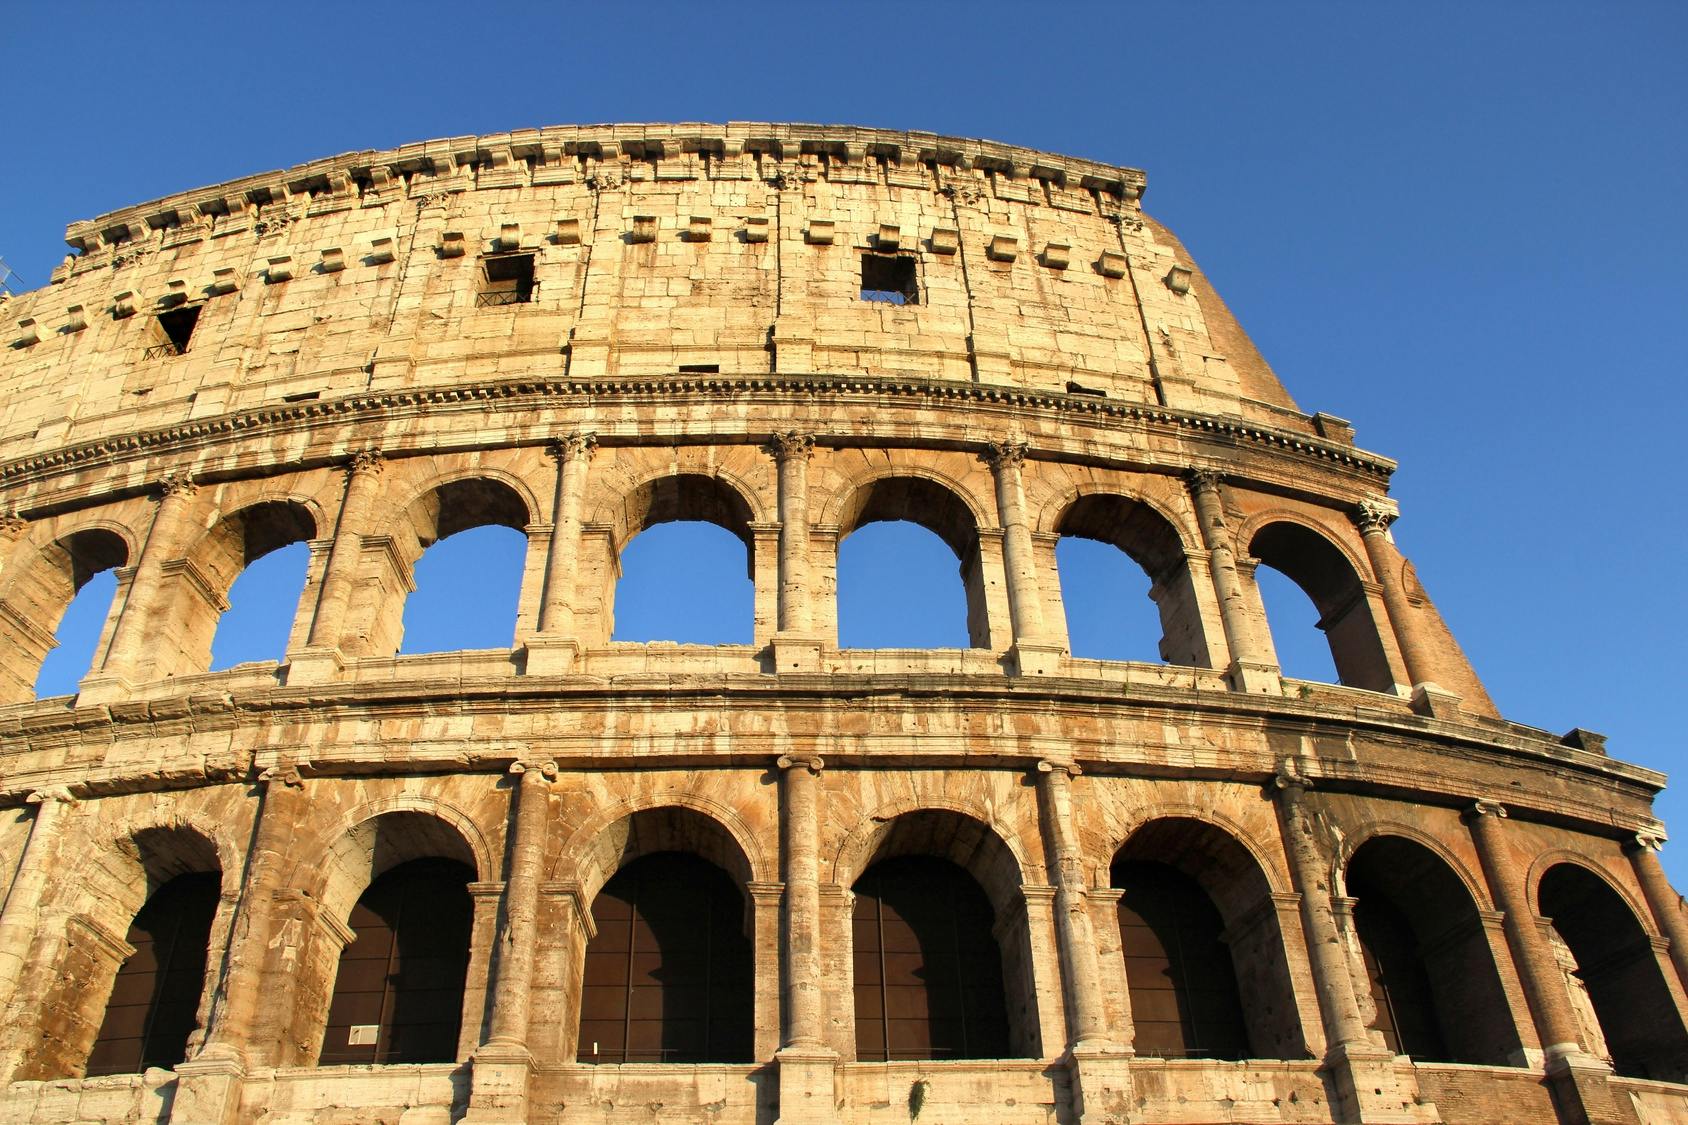 Visita semiprivada al Coliseo con acceso a la Arena, el Foro Romano y el monte Palatino